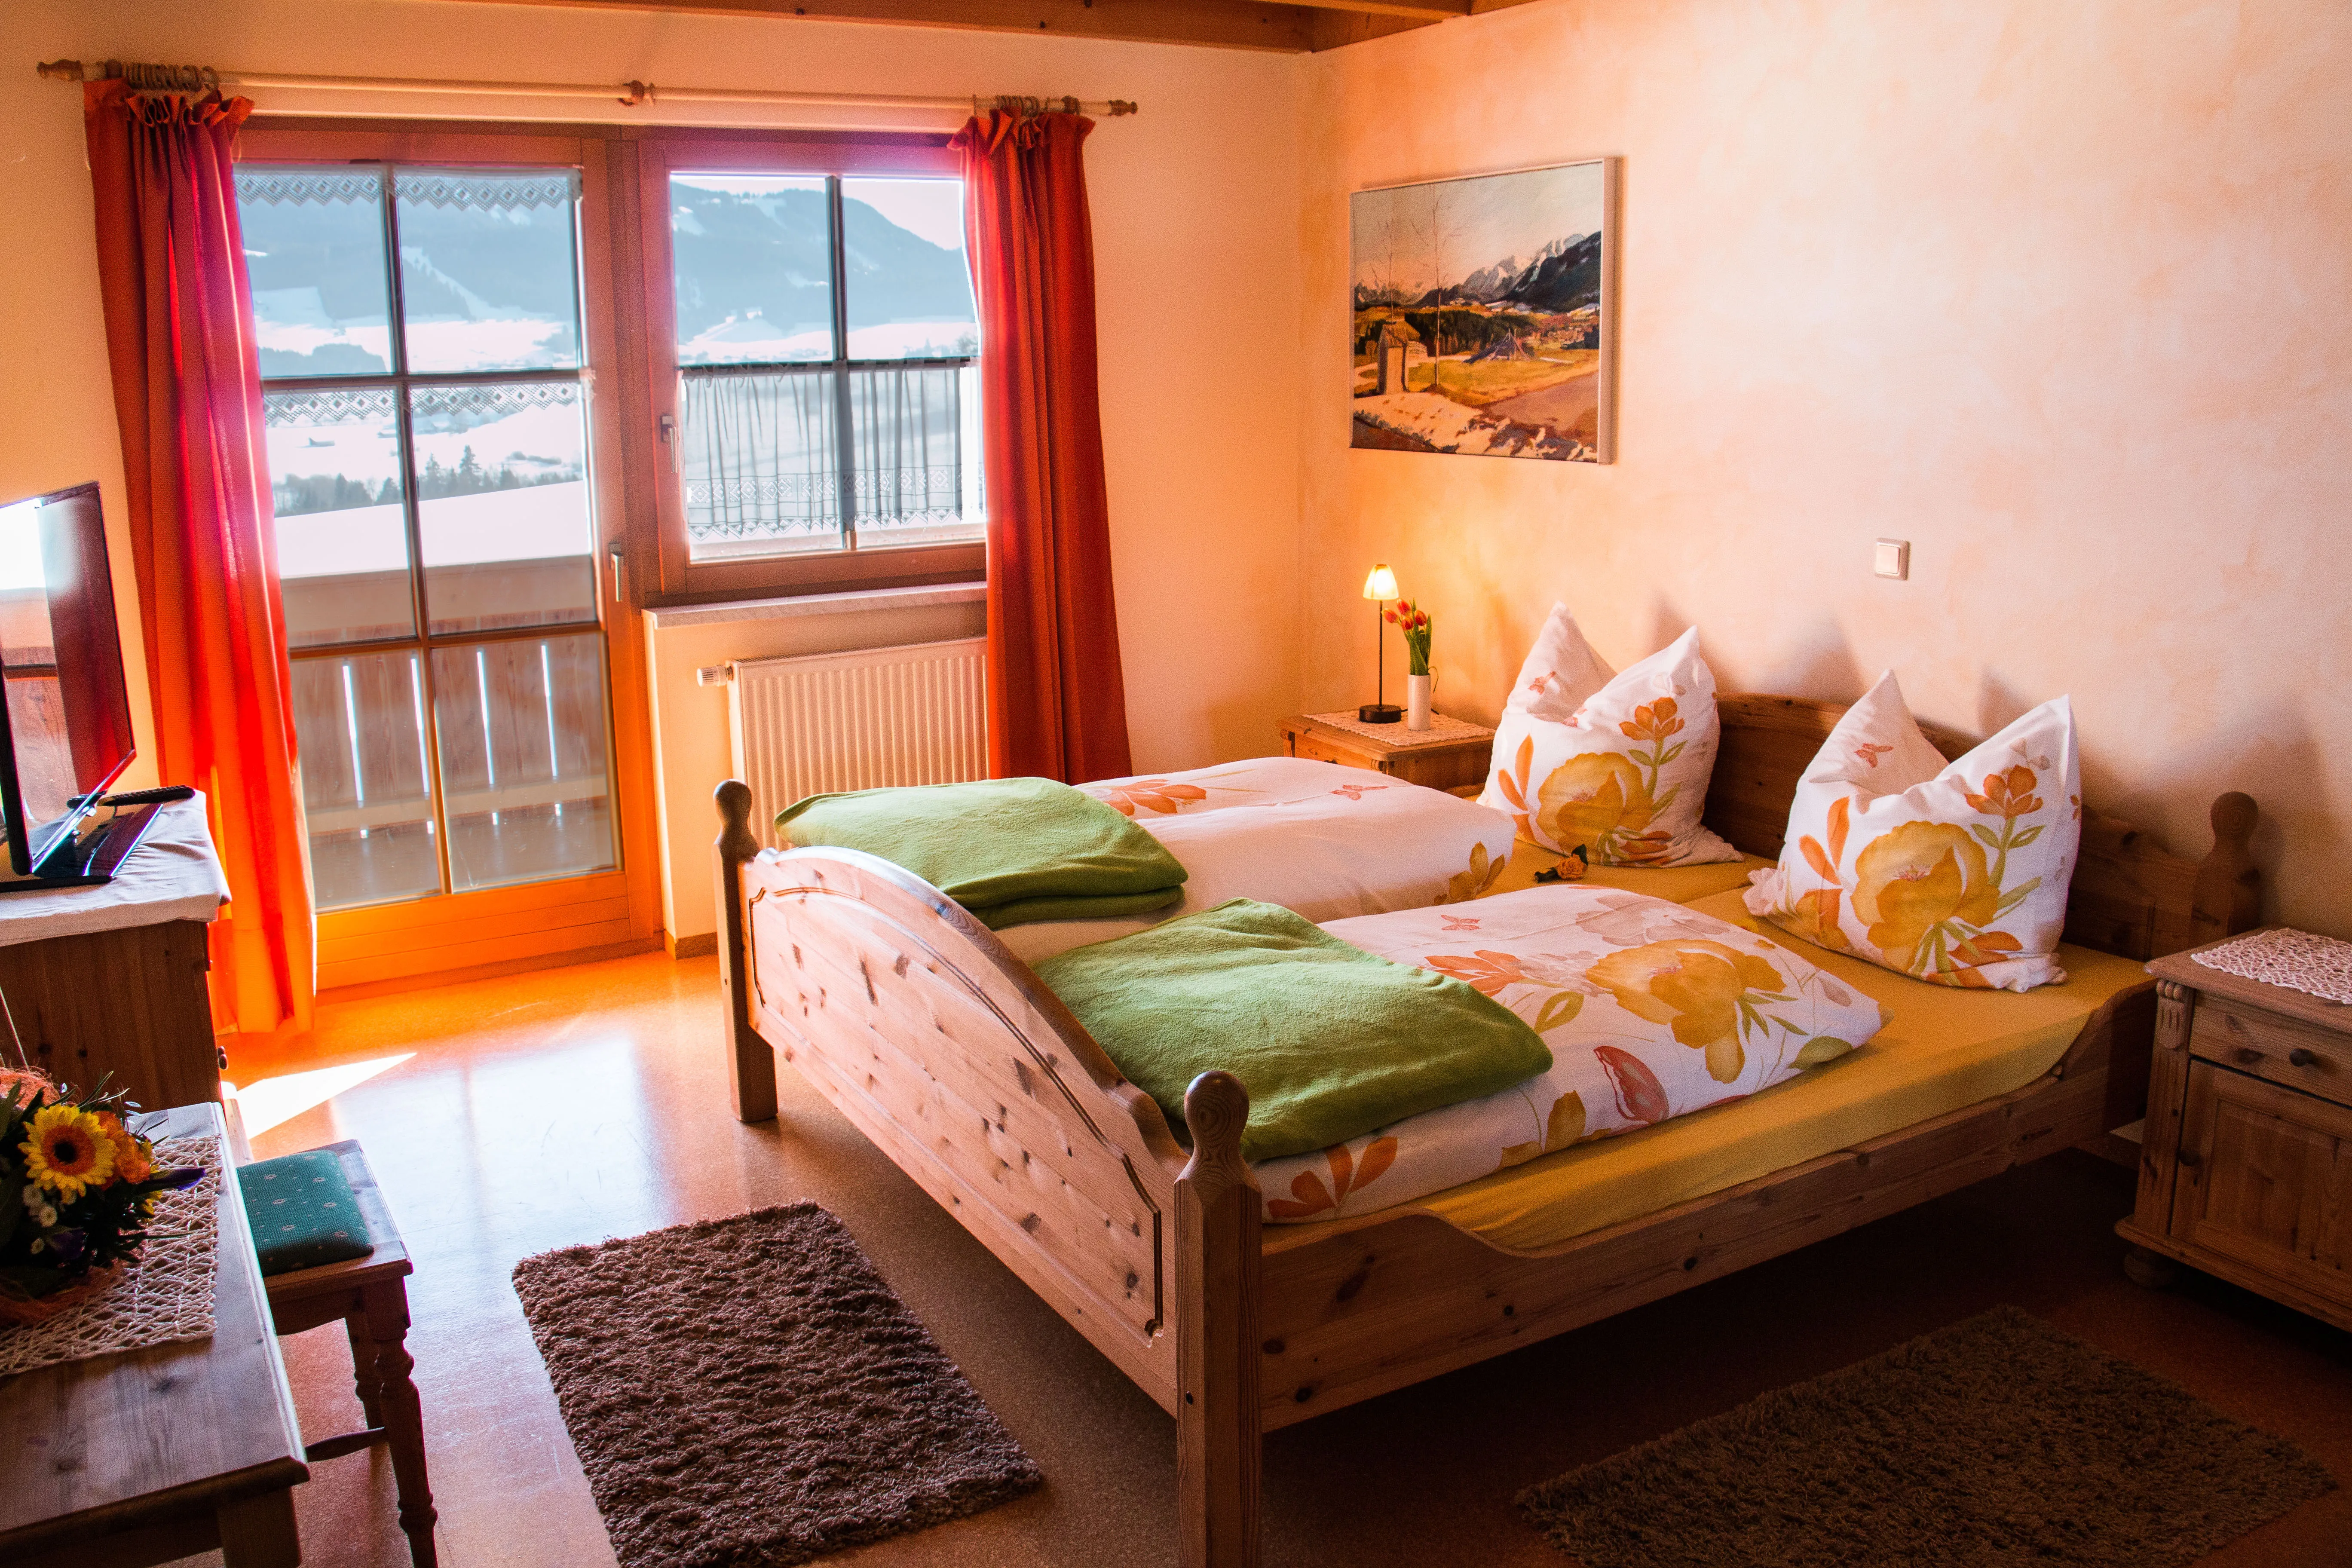 Innenansicht eines Gasthof Doppelzimmers in rot und orange gekleidet und mit smaragdgrünen Decken auf dem Bett.